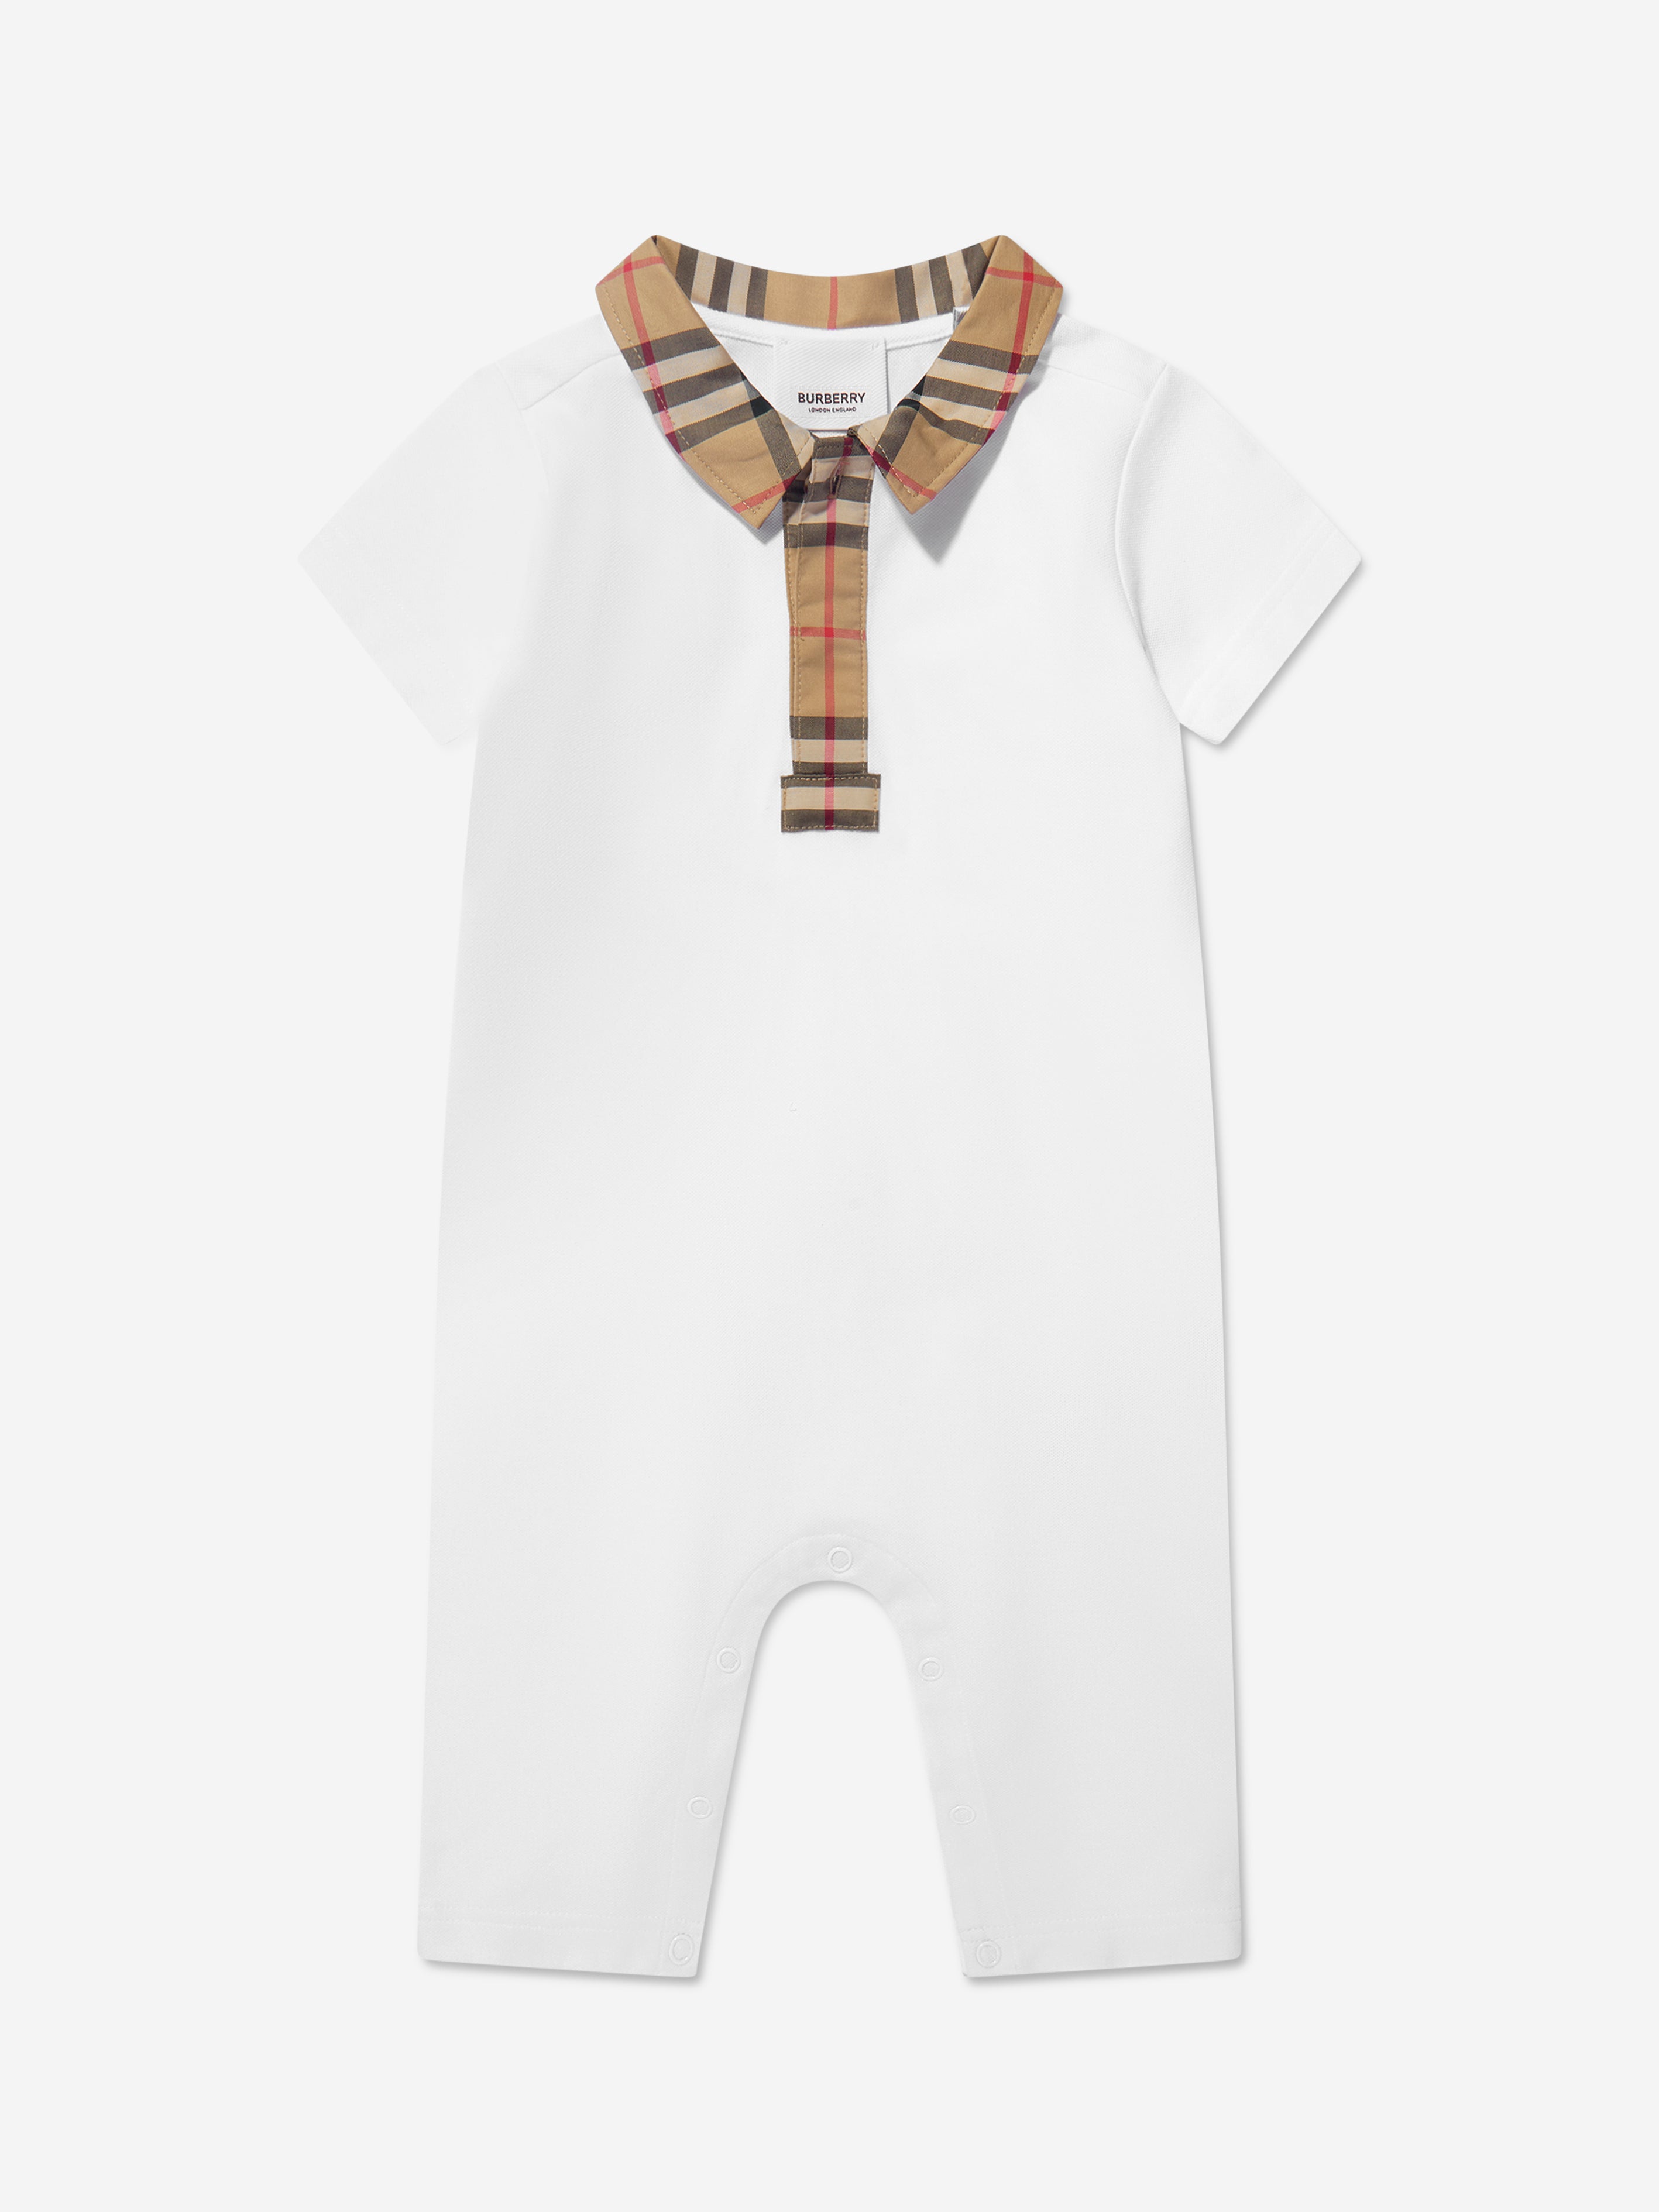 verdamping ga zo door Hechting Burberry Kids - Baby Boys Charli Check Polo Romper In White | Childsplay  Clothing